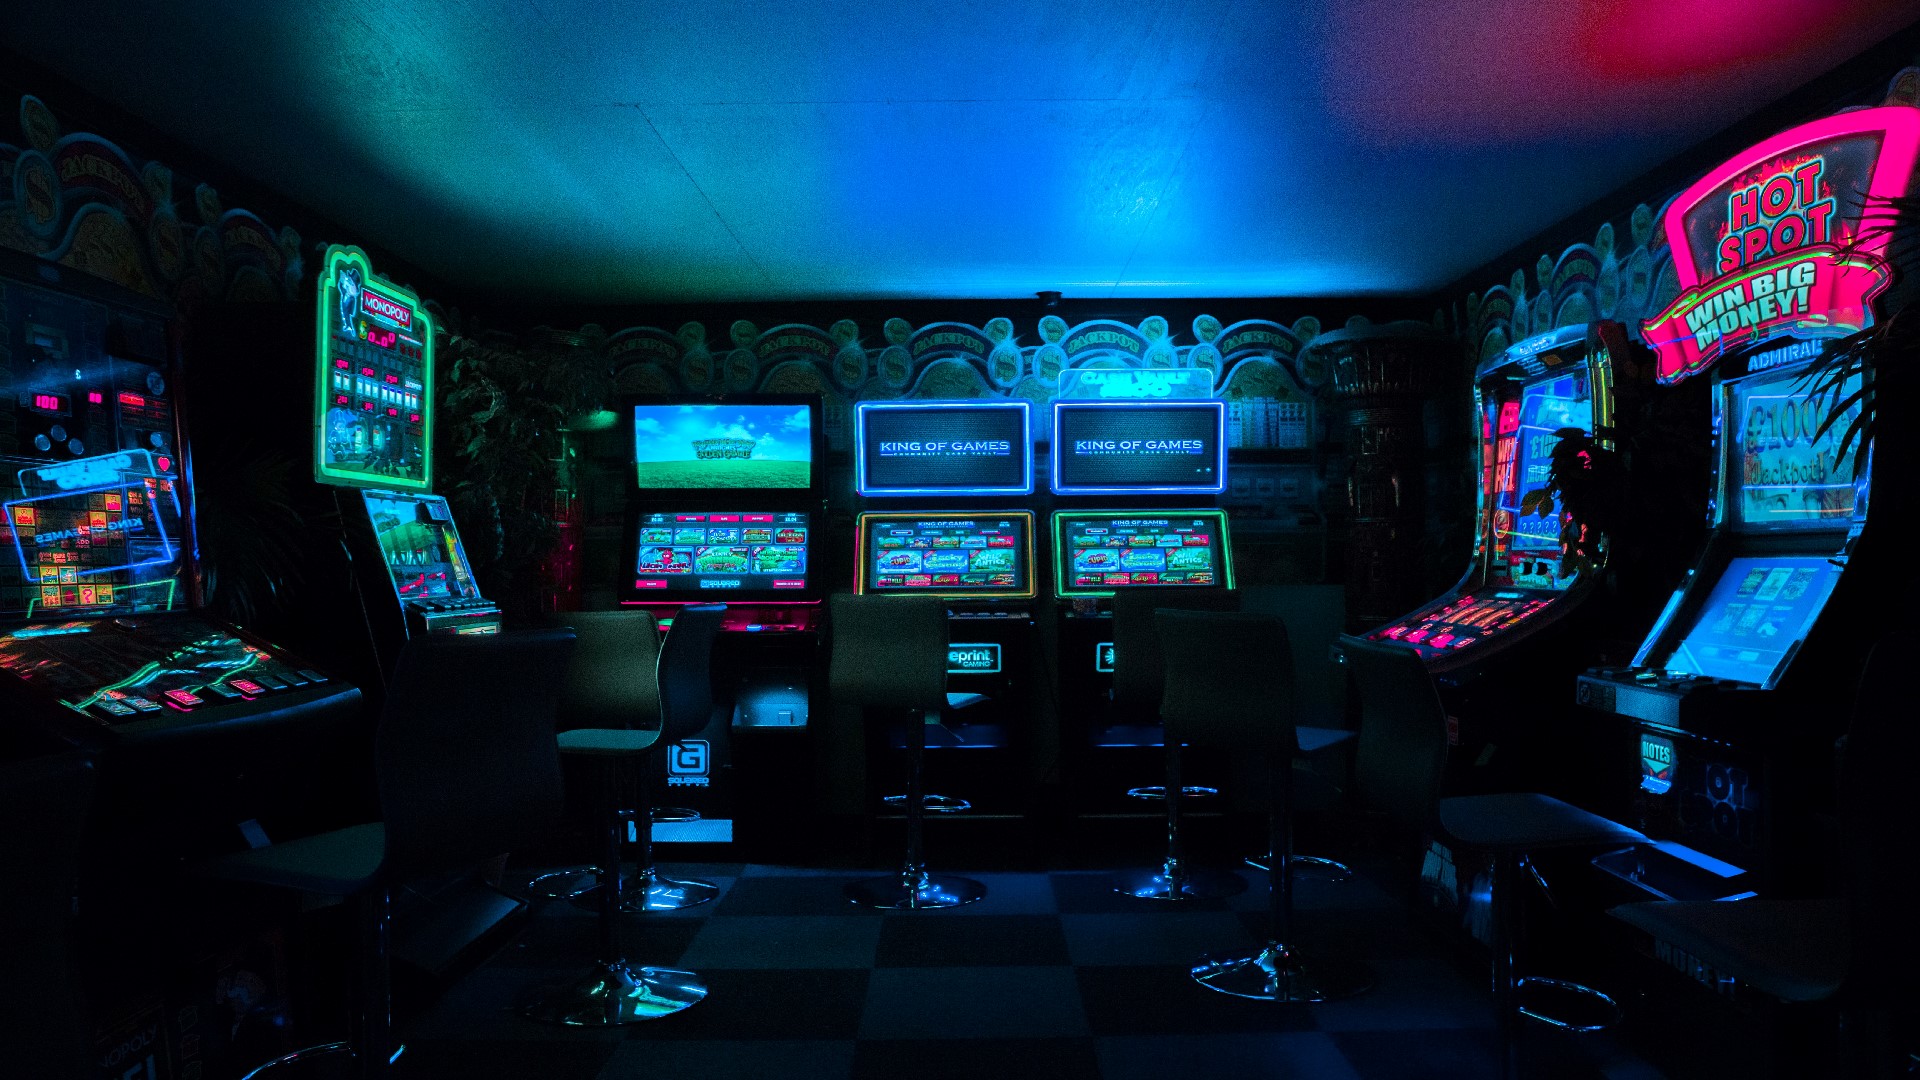 An image of an arcade